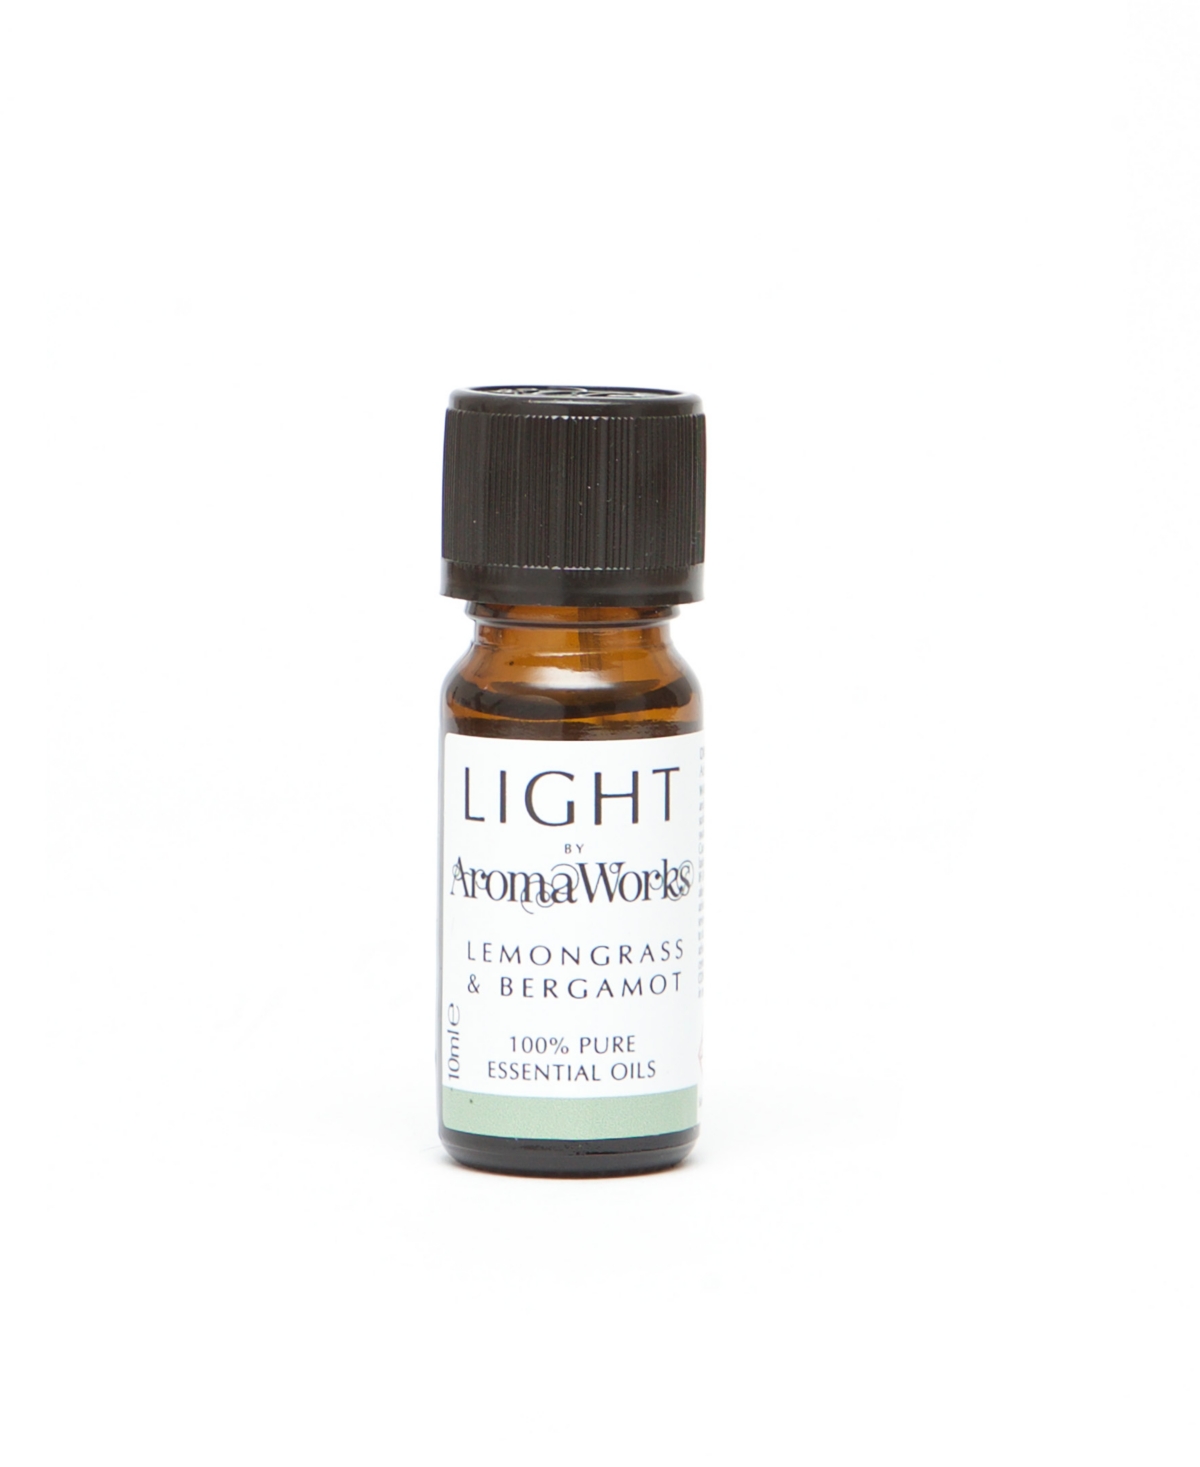 Aromaworks Light Range Lemongrass And Bergamot Essential Oil, 10 ml